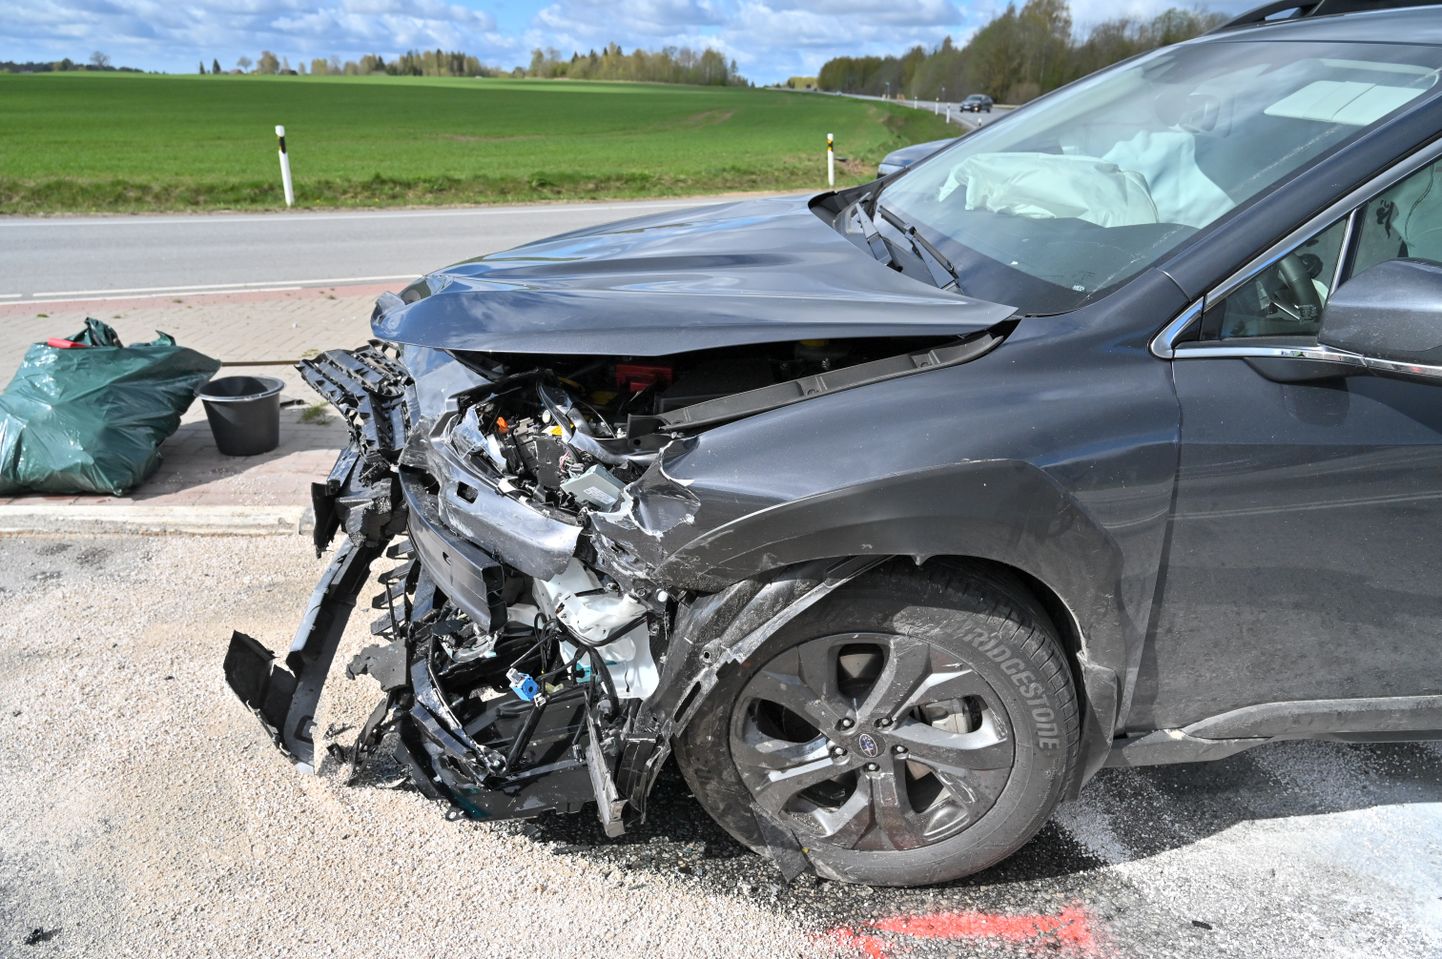 Laupäeval pärast kella üheksat hommikul juhtus liiklusõnnetus Viljandi vallas Viljandi- Rõngu maantee 3. kilomeetril.